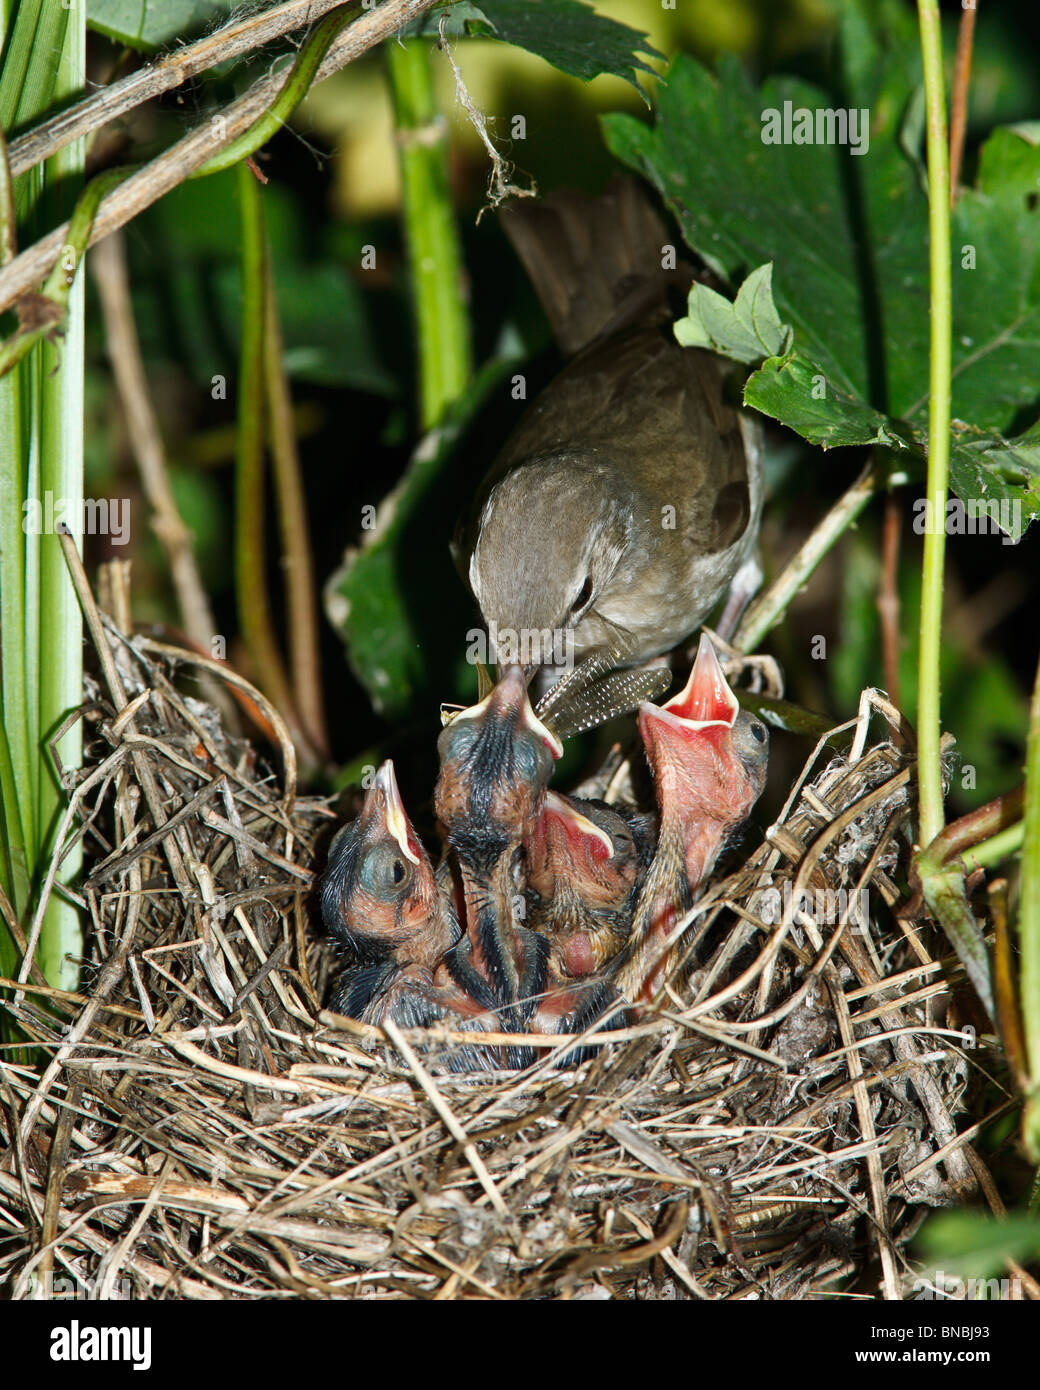 Garden Warbler (Sylvia borin) by a nest with baby bird. Stock Photo